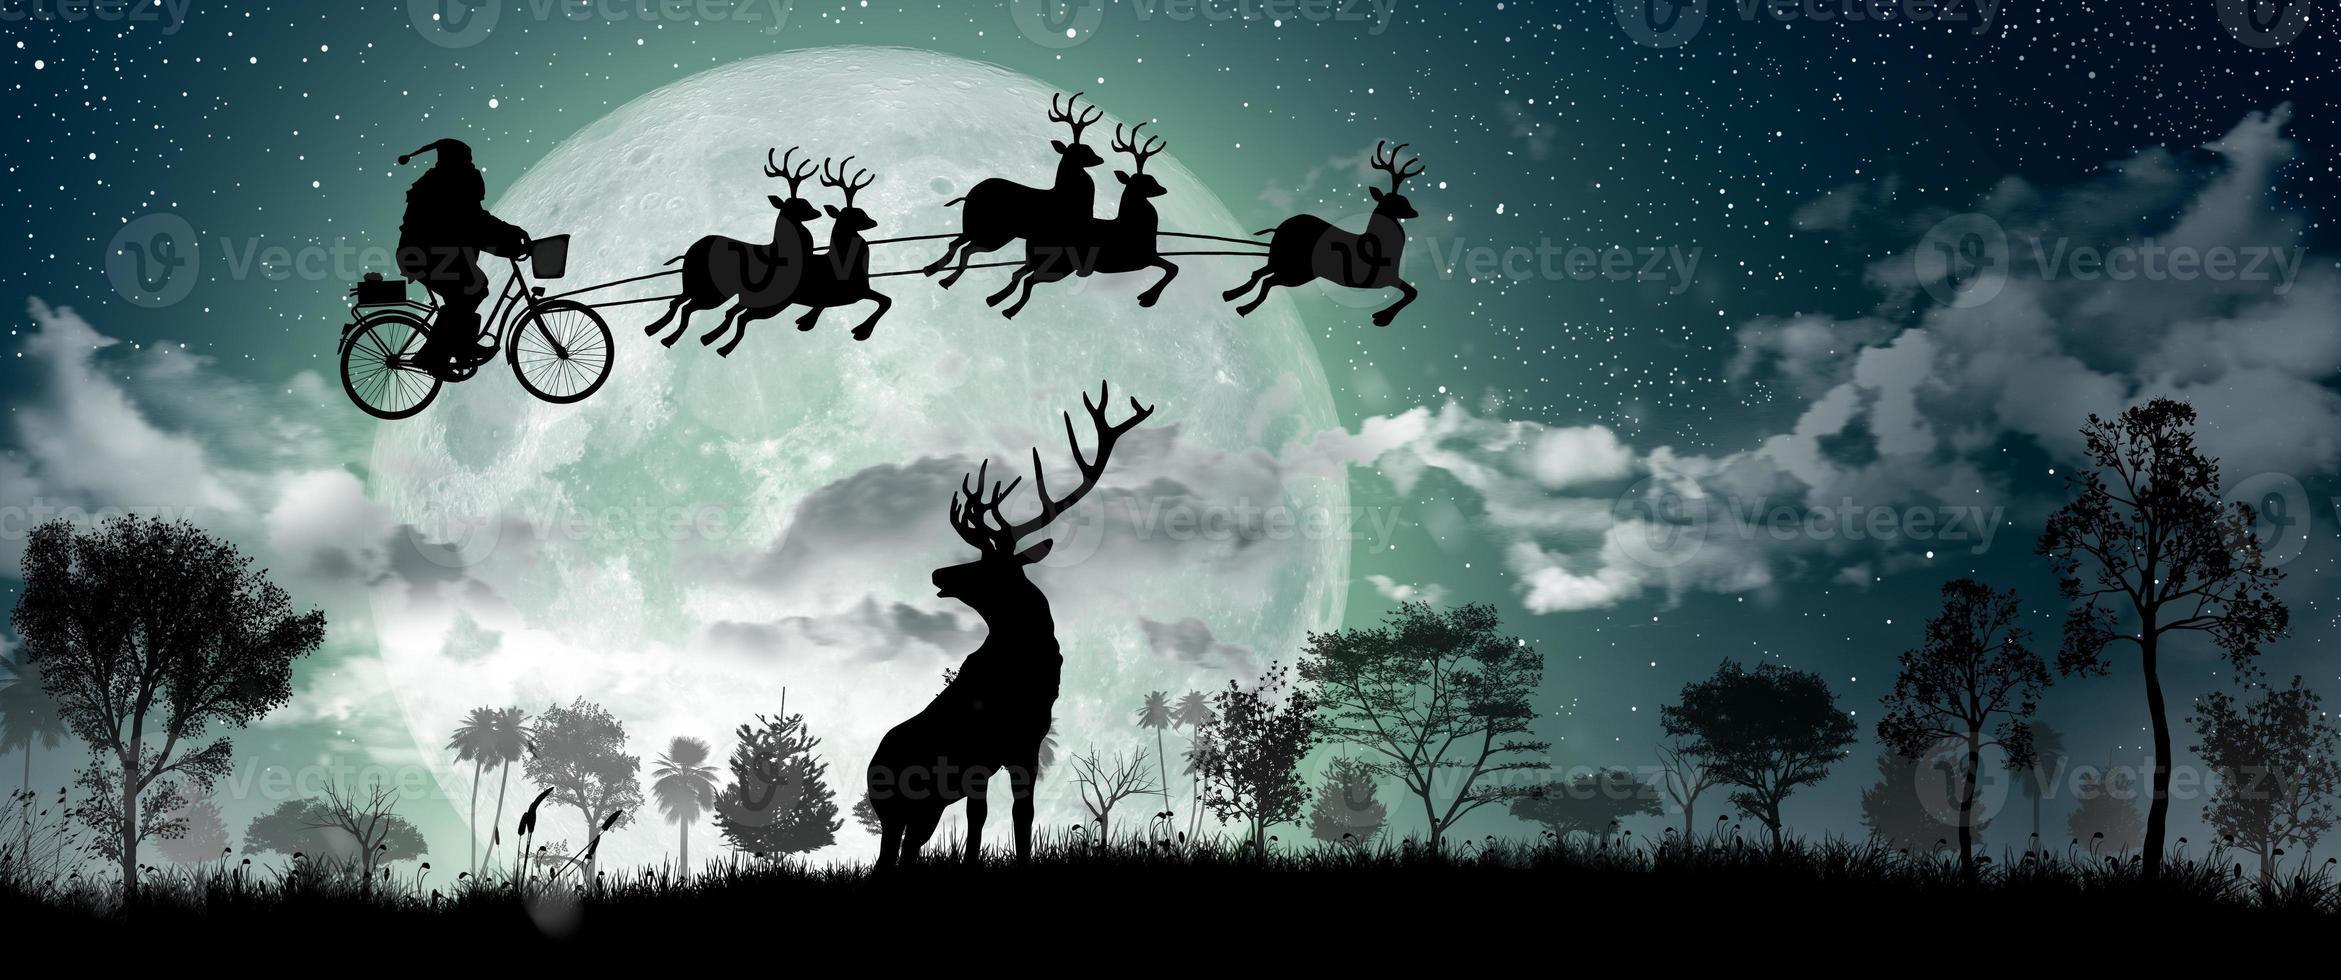 silueta de santa claus montando en su bicicleta para llevar un regalo con sus renos durante la luna llena en la noche de navidad. foto